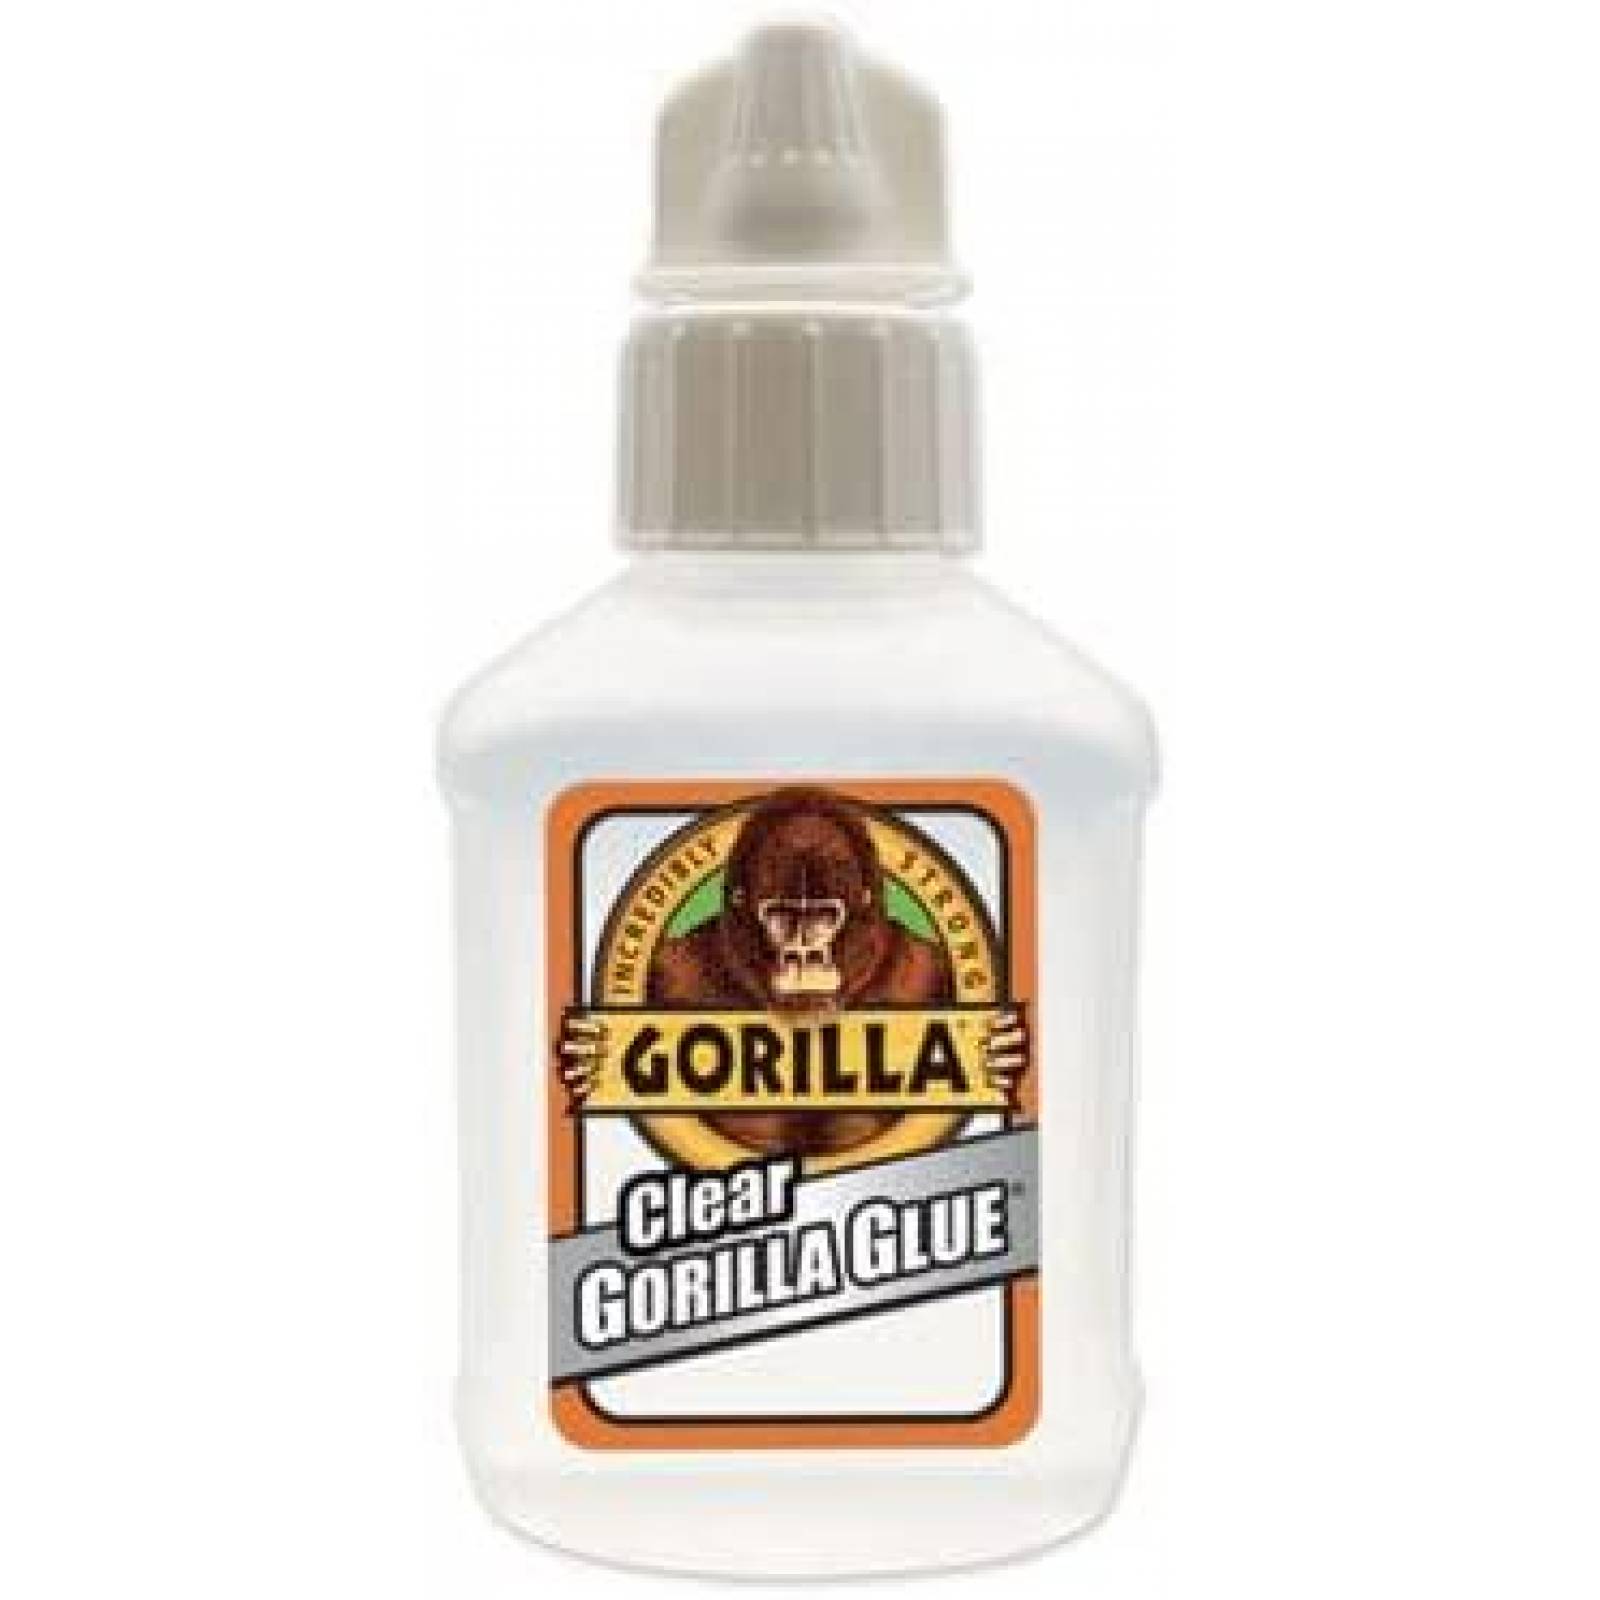 No cree a una 'tiktoker' que usó pegamento extrafuerte en lugar de laca, se  pega un vaso al labio con Gorilla Glue y termina en urgencias - RT